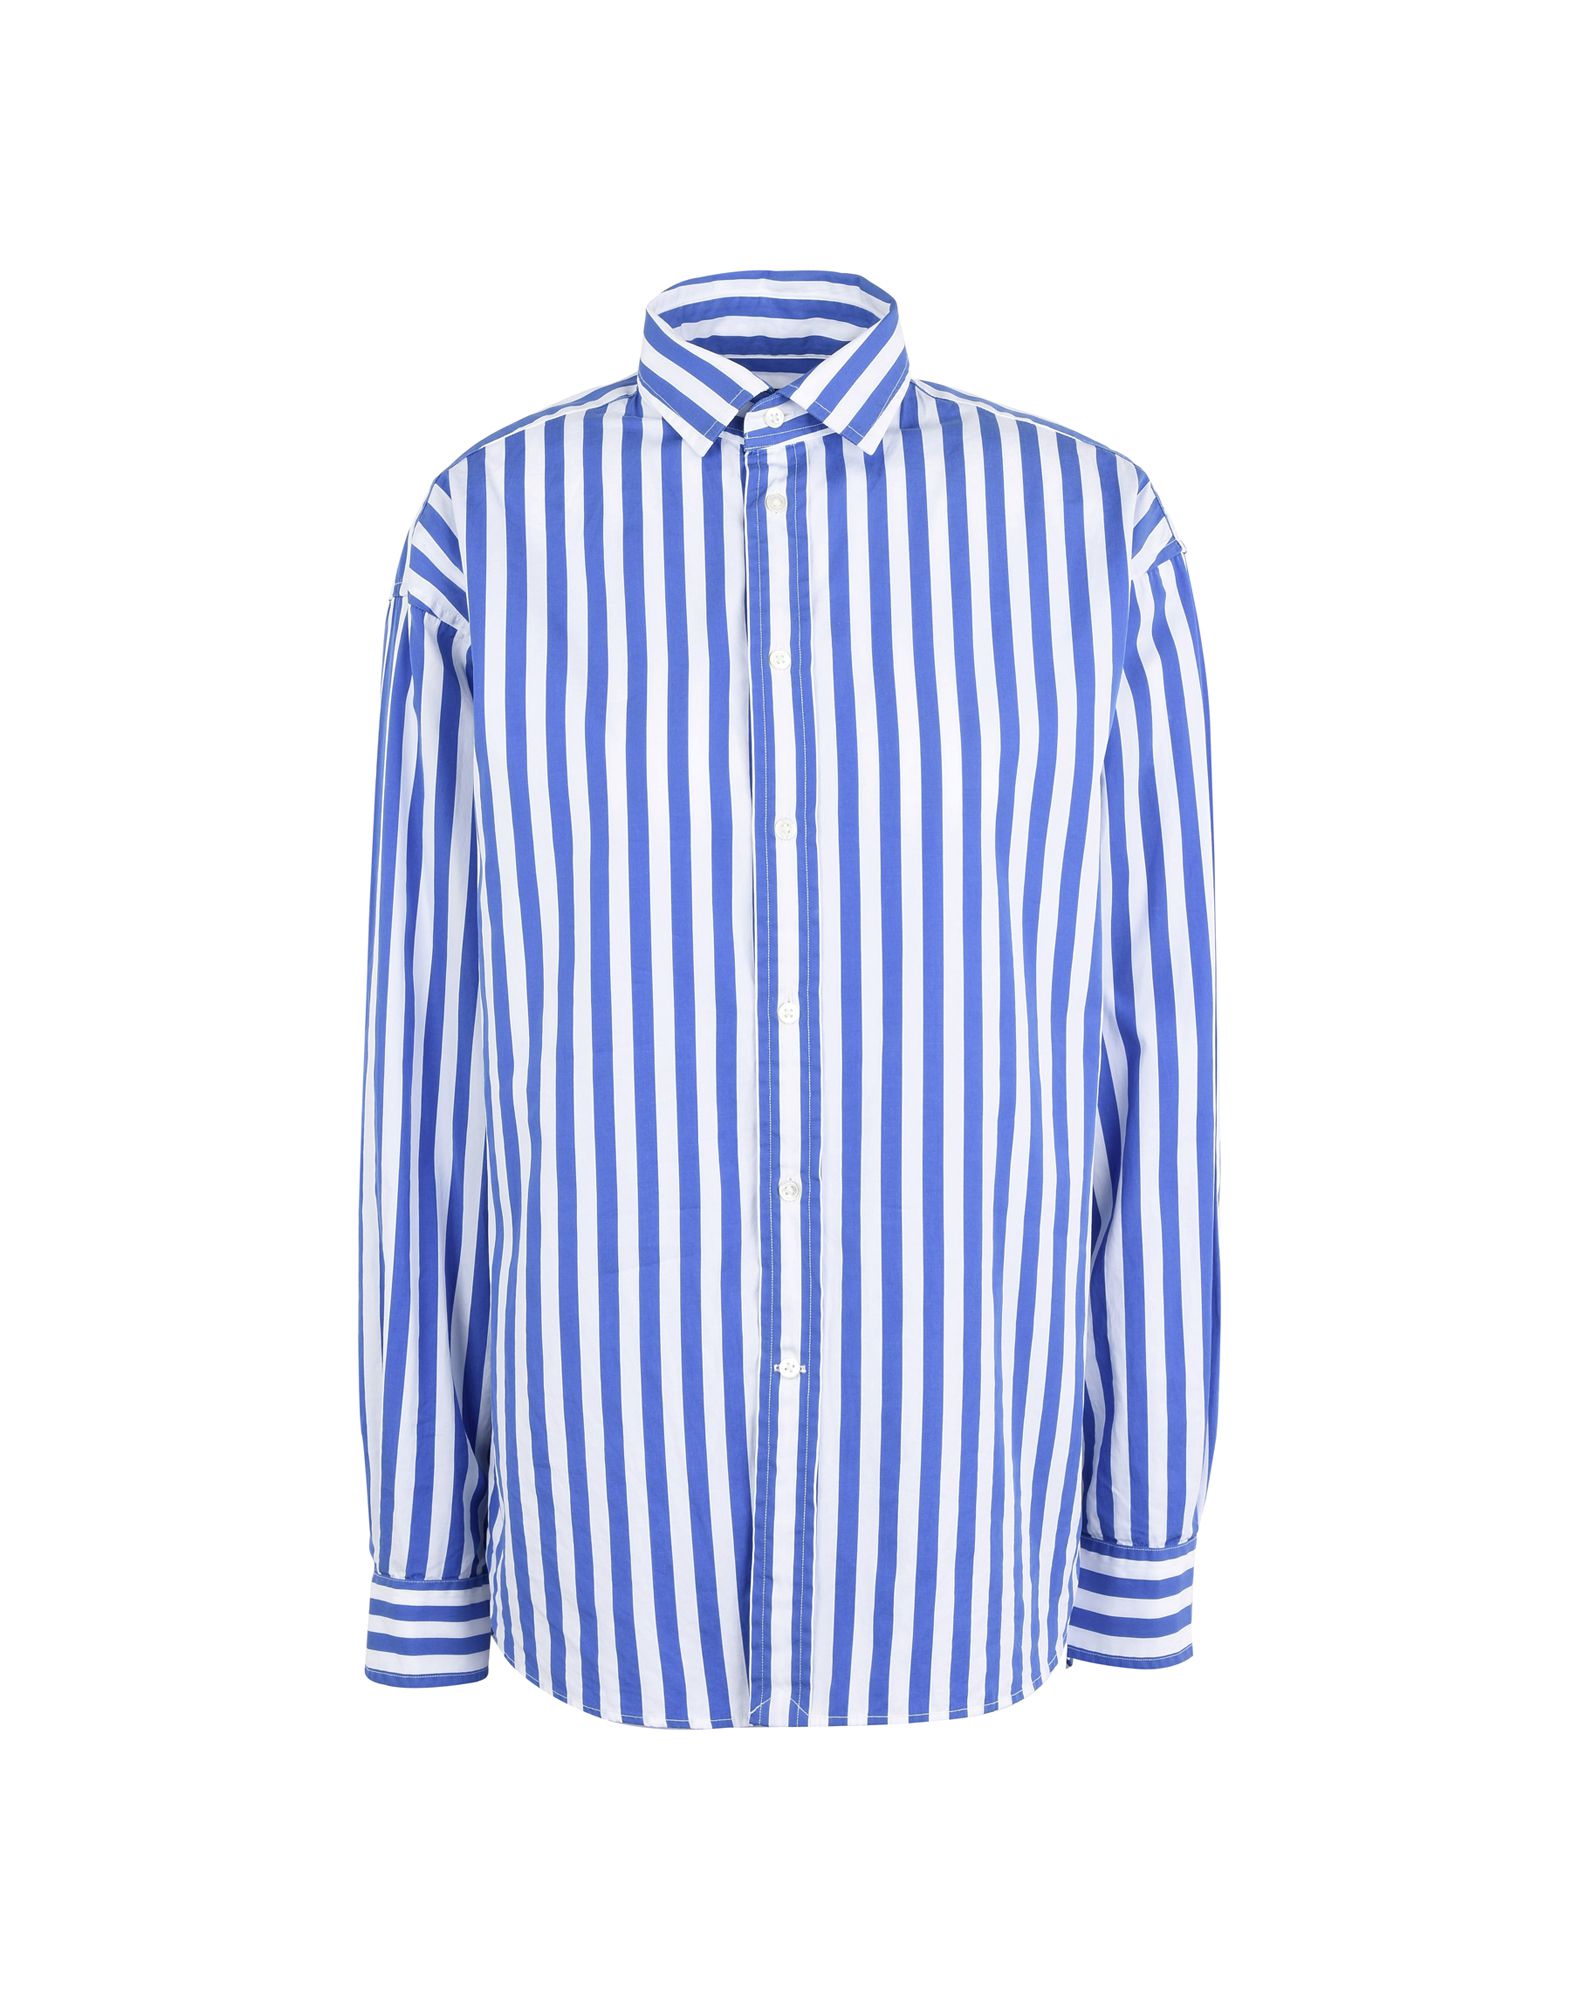 《送料無料》POLO RALPH LAUREN レディース シャツ ブライトブルー 6 コットン 100% Bengal-Stripe Cotton Shirt